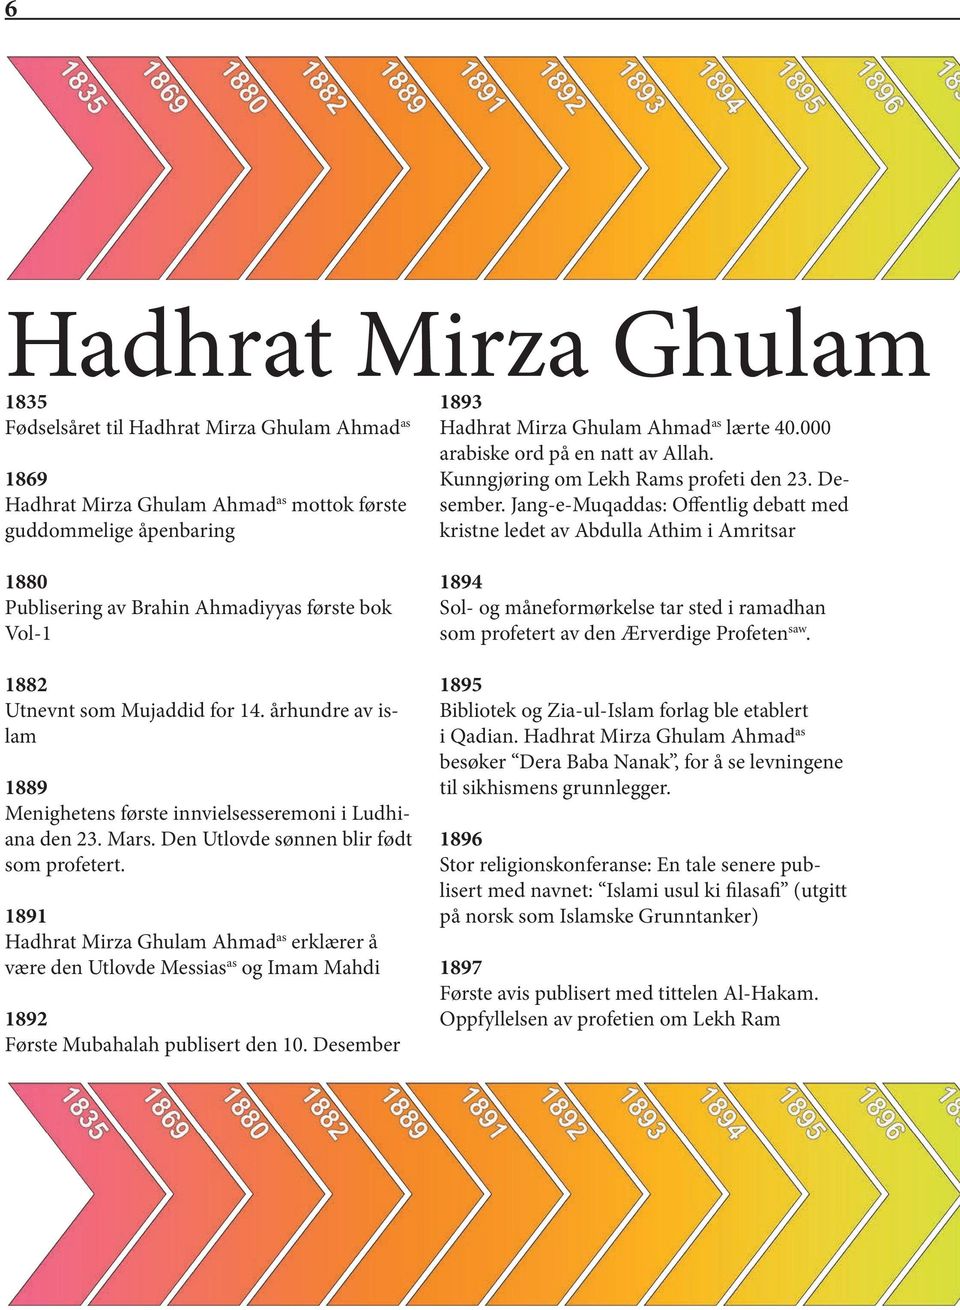 1891 Hadhrat Mirza Ghulam Ahmad as erklærer å være den Utlovde Messias as og Imam Mahdi 1892 Første Mubahalah publisert den 10. Desember 1893 Hadhrat Mirza Ghulam Ahmad as lærte 40.